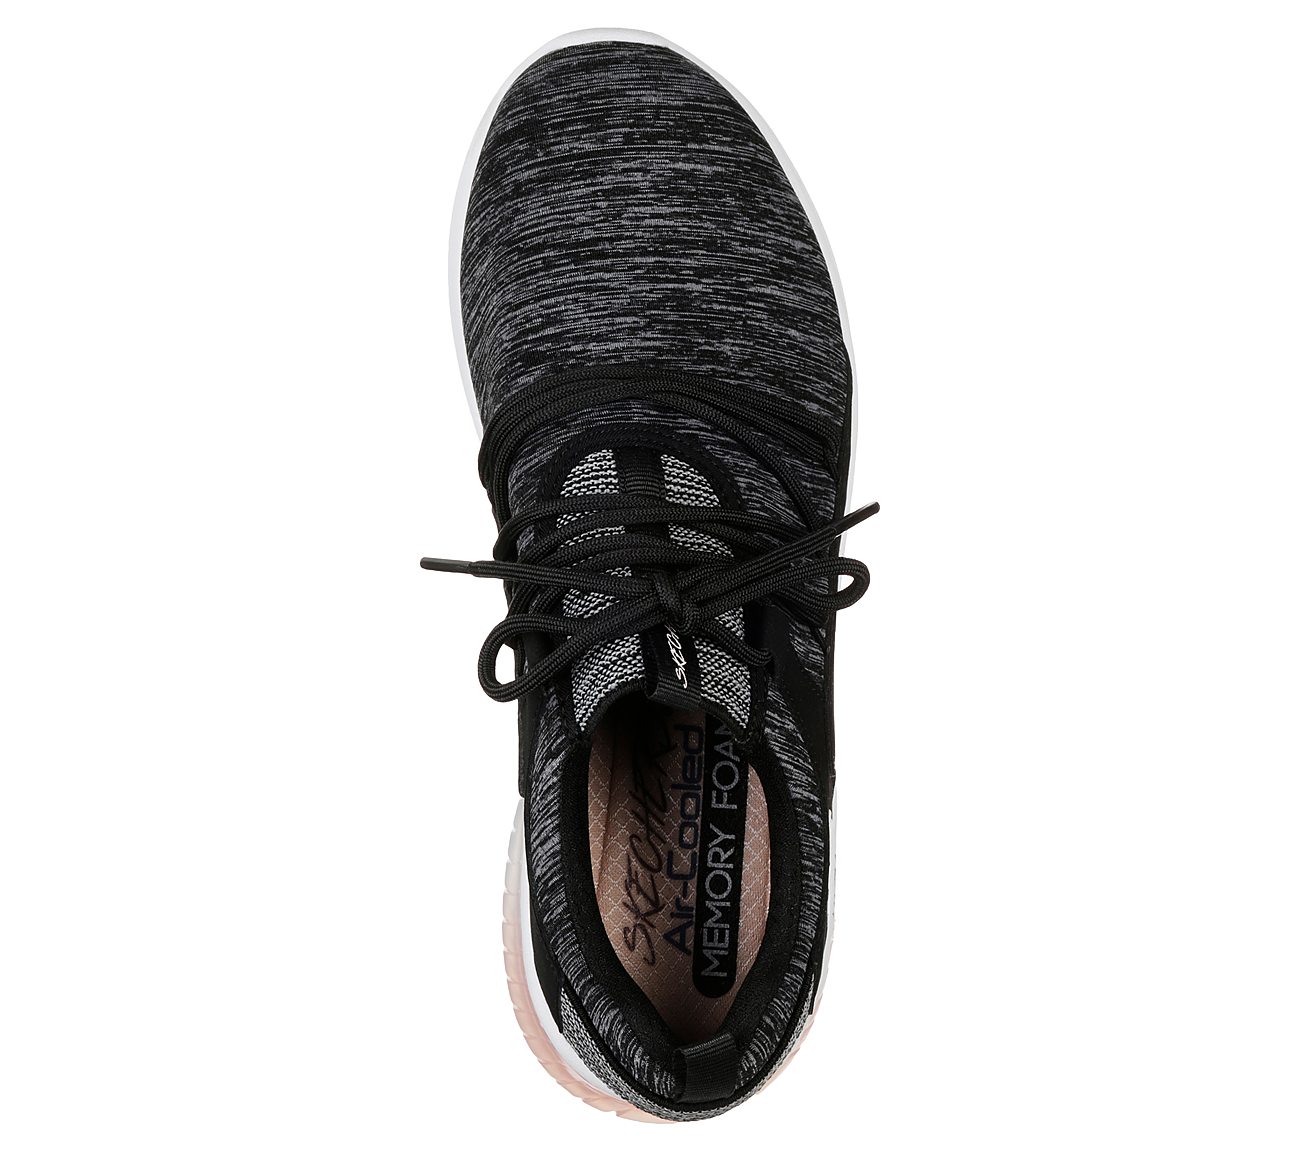 SKECH-AIR ULTRA FLEX-LITE BRE, BLACK/LIGHT PINK Footwear Top View